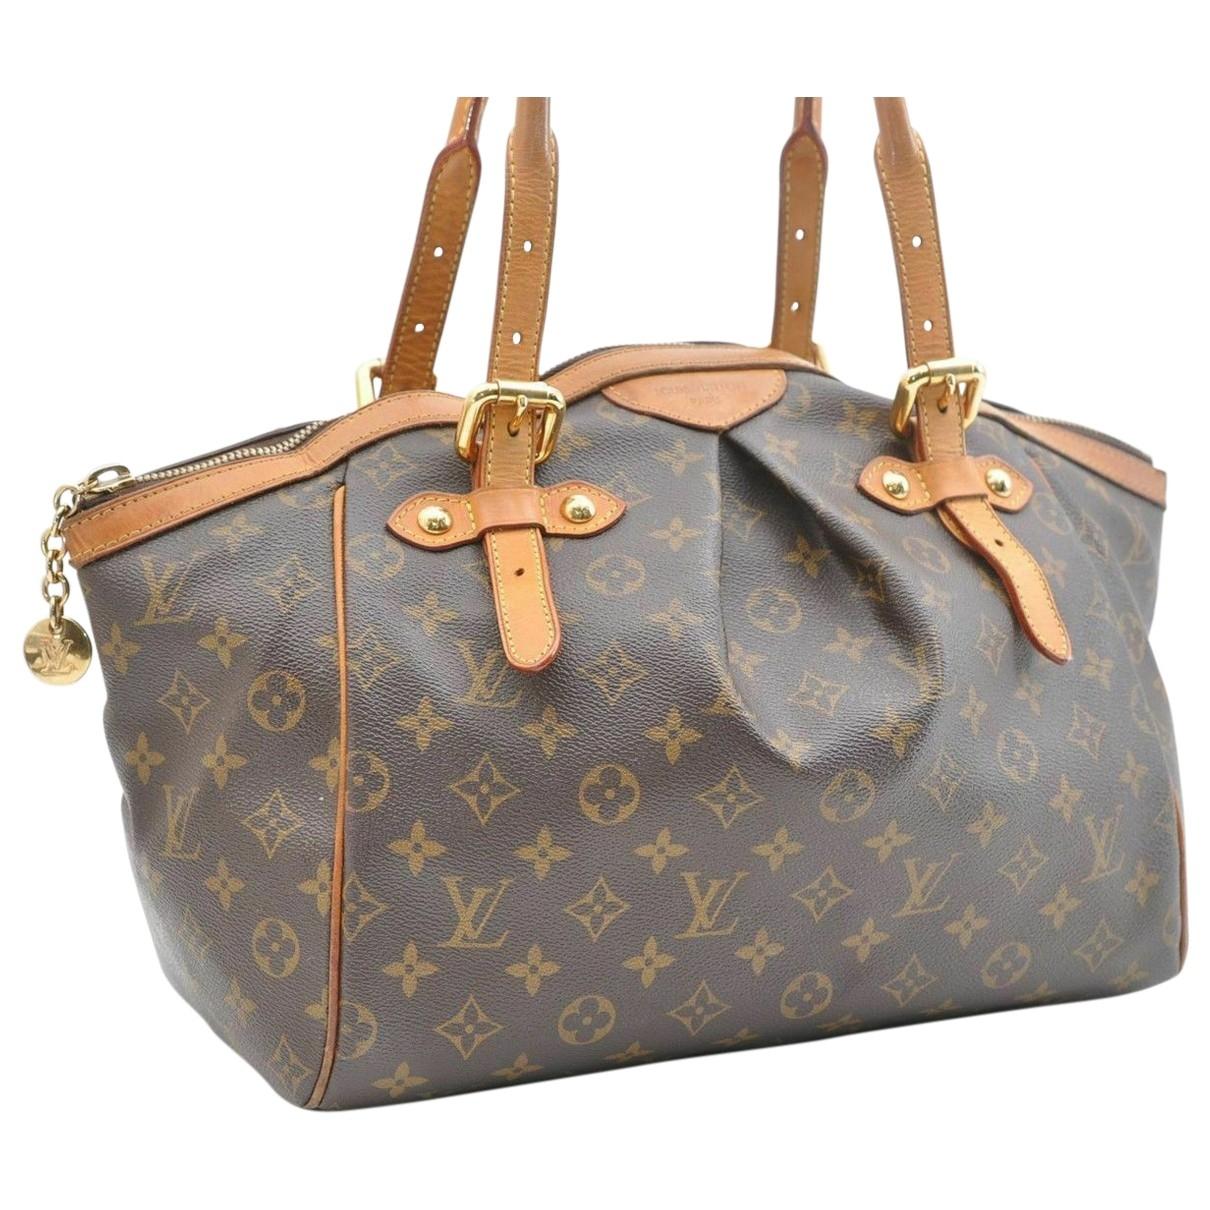 Lyst - Louis Vuitton Brown Cloth Handbag in Brown